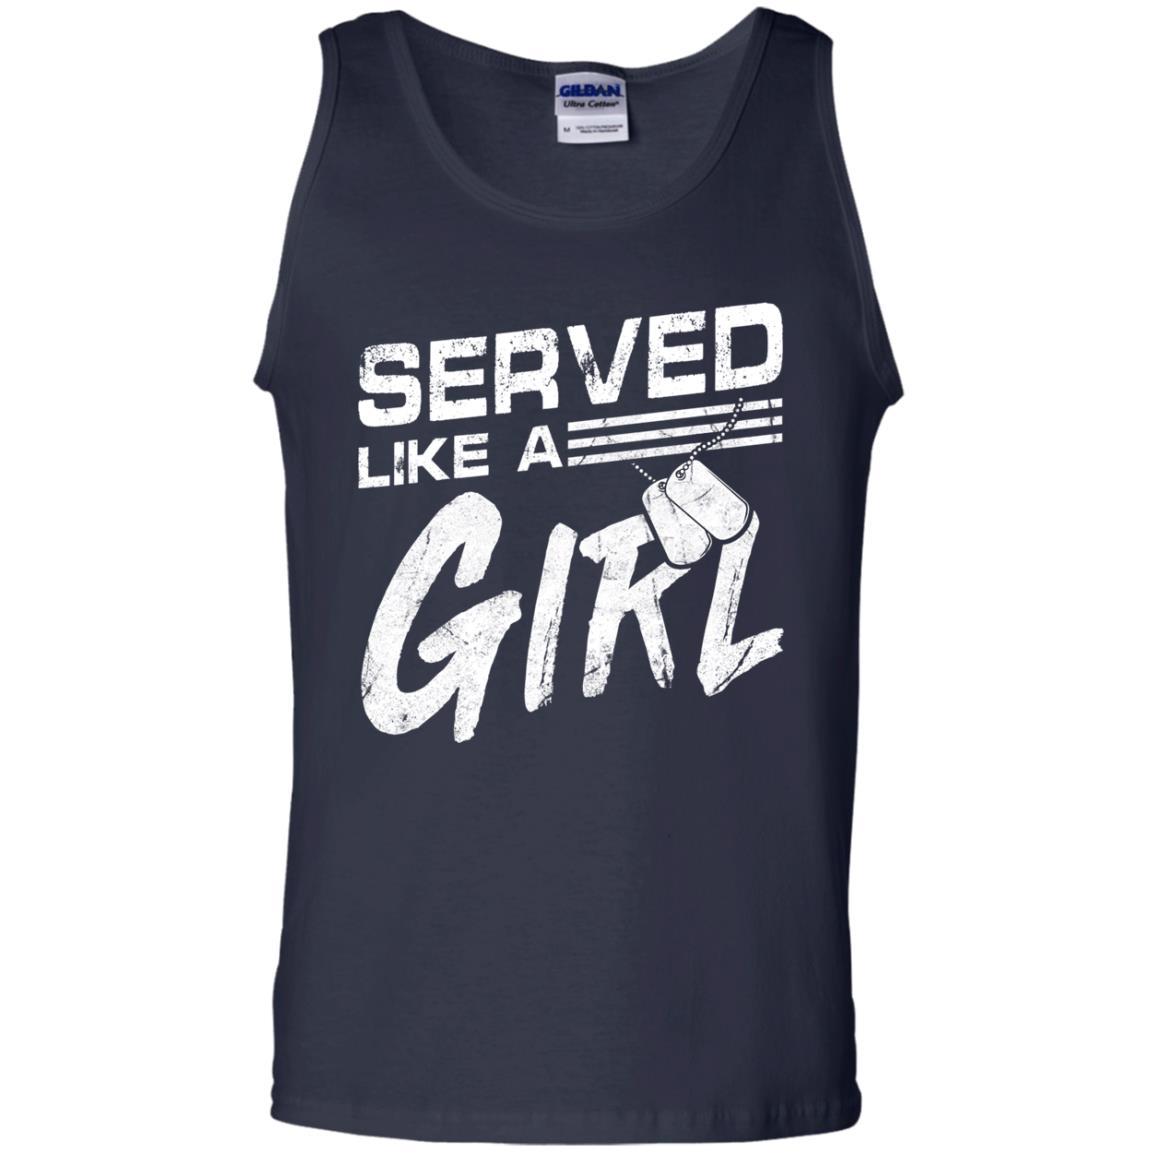 Military T-Shirt "Female Veterans Served Like A Girl Women On" Front-TShirt-General-Veterans Nation